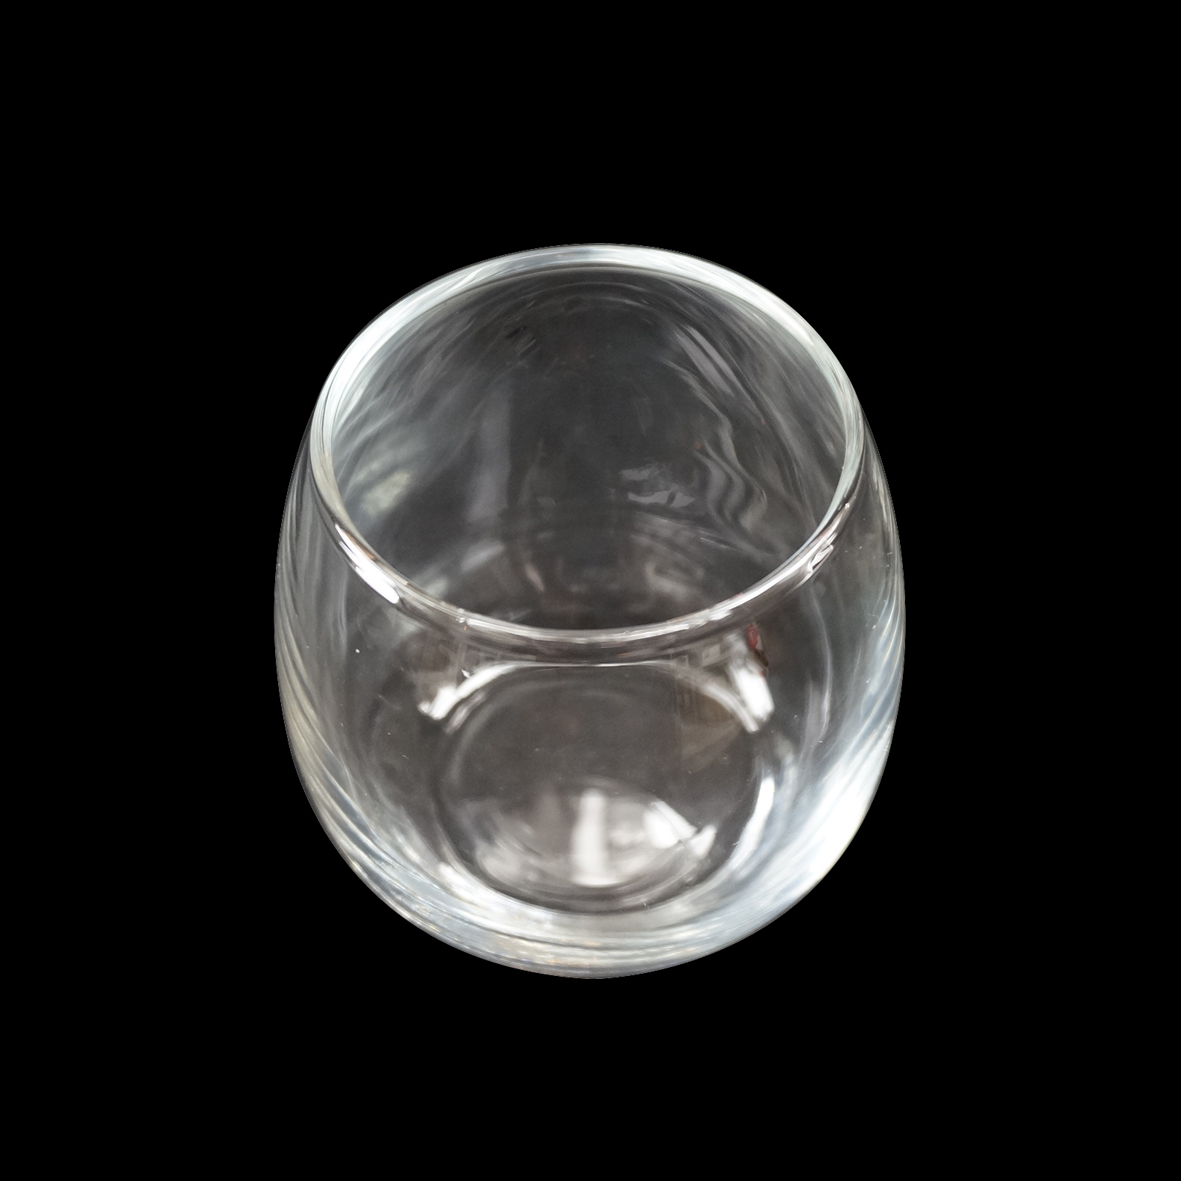 キャンドル材料 大注目 キャンドル用グラス 即日 激安通販ショッピング kinari 球形タイプ 約140ml 1個 cg1-s-1 フィルム付 バブルボールS